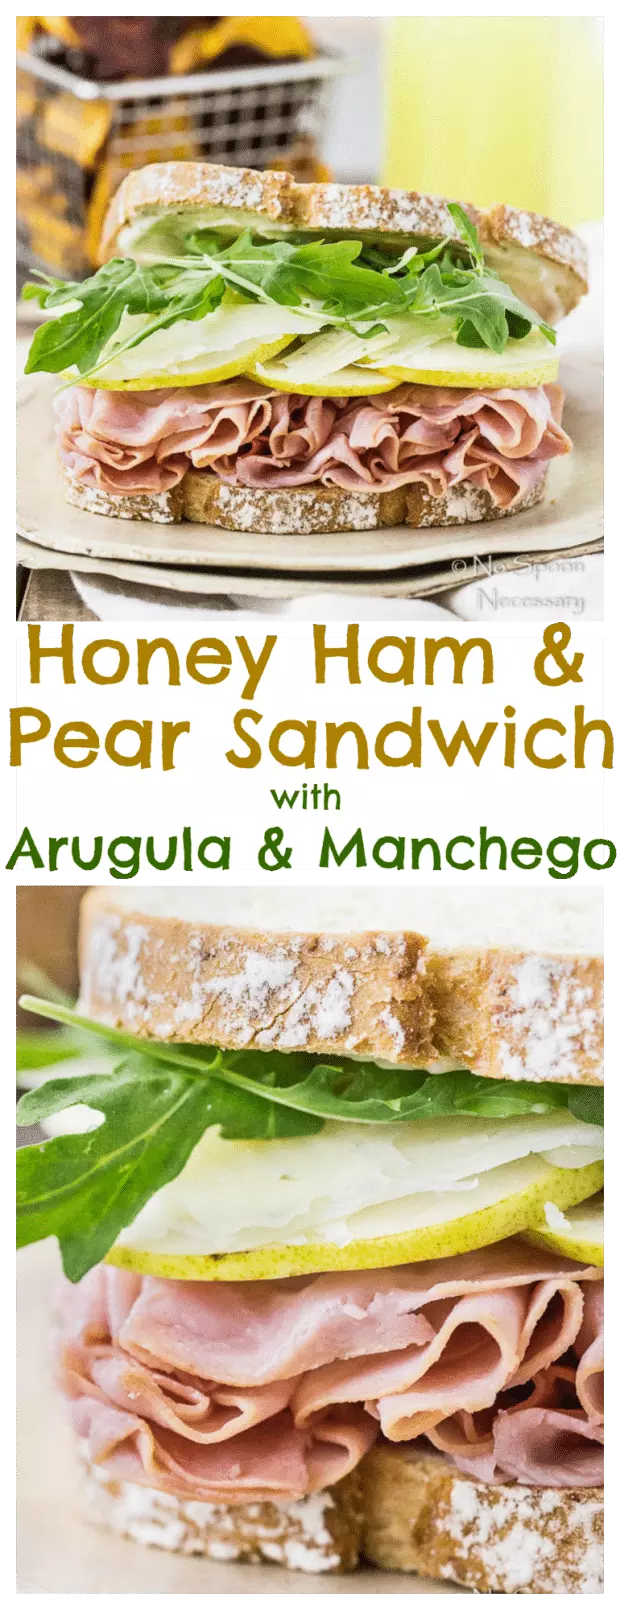 ham-pear-sandwich-with-arugula-manchego-long-pin1